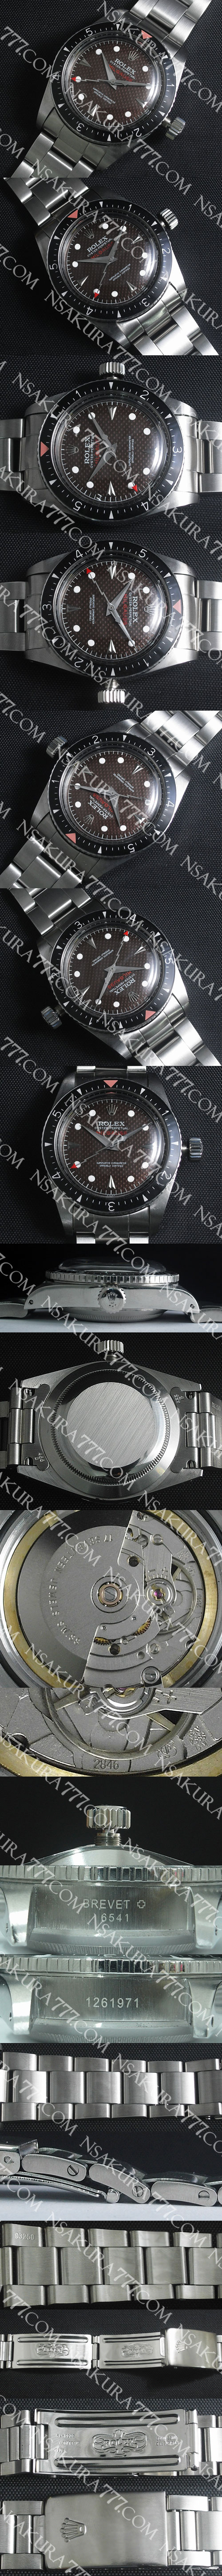 レプリカ時計ロレックス 初代ミルガウス ヴィンテージ Ref. 6541 Swiss ETA社 2846 - ウインドウを閉じる